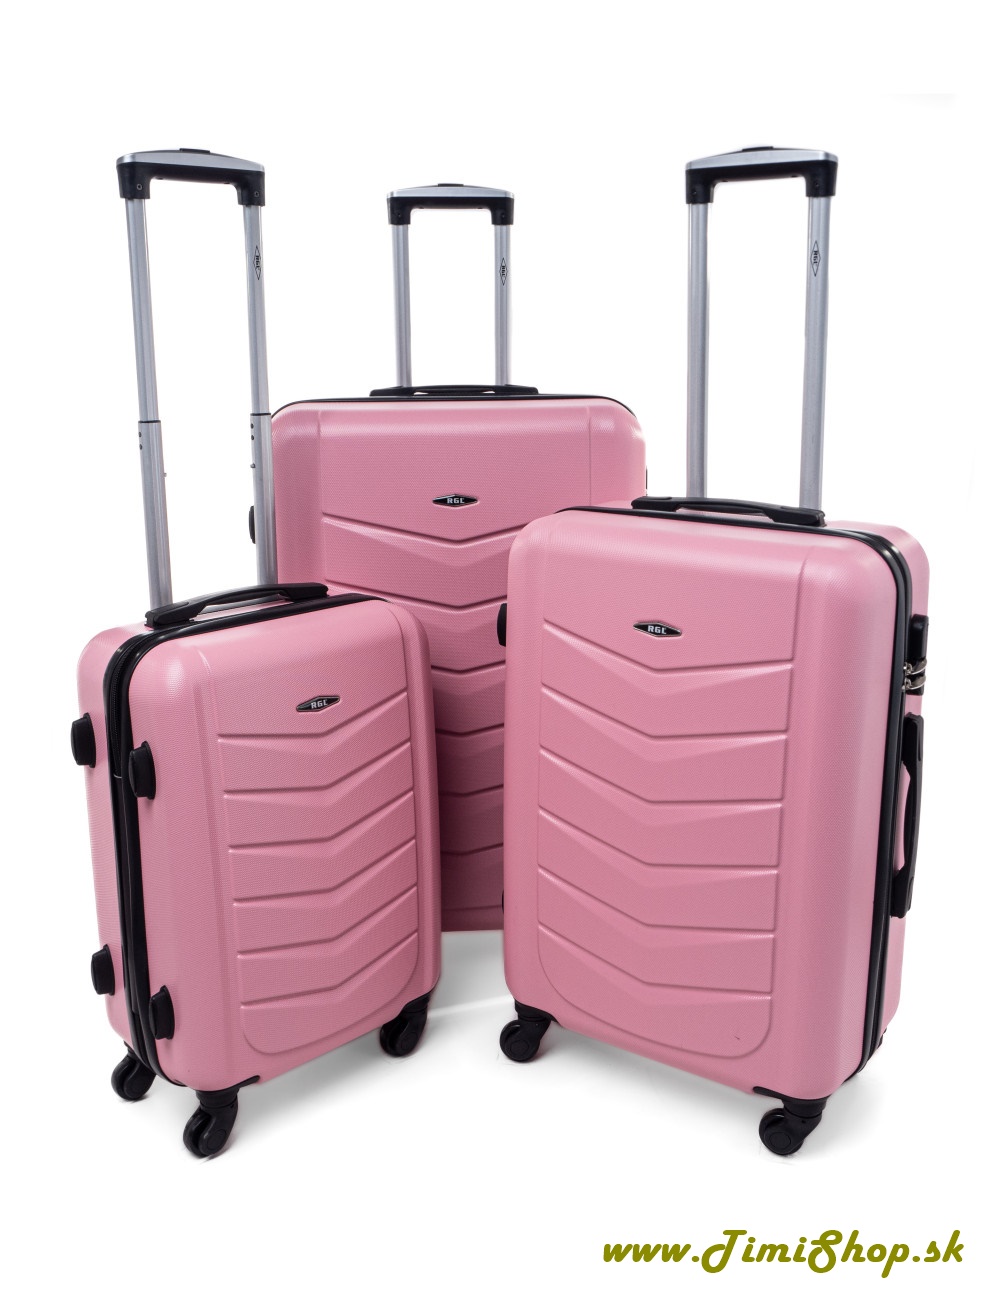 Sada cestovných kufrov L,XL,XXL - Sv.ružova